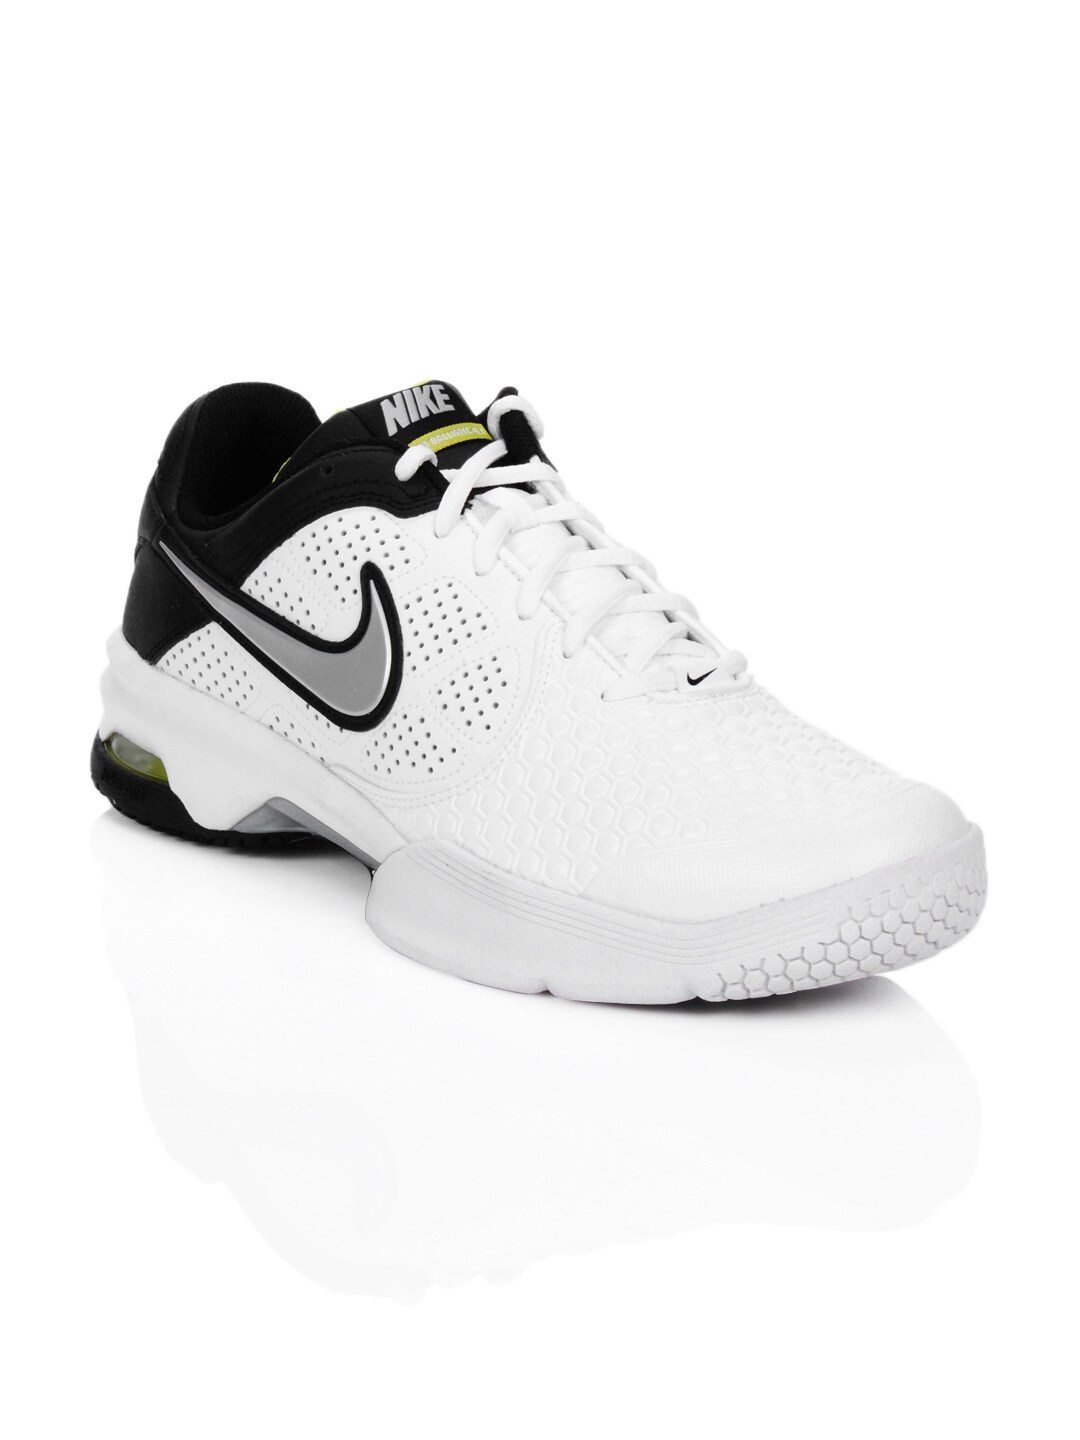 Nike Men Air Courtballistec 4.1 White Sports Shoes